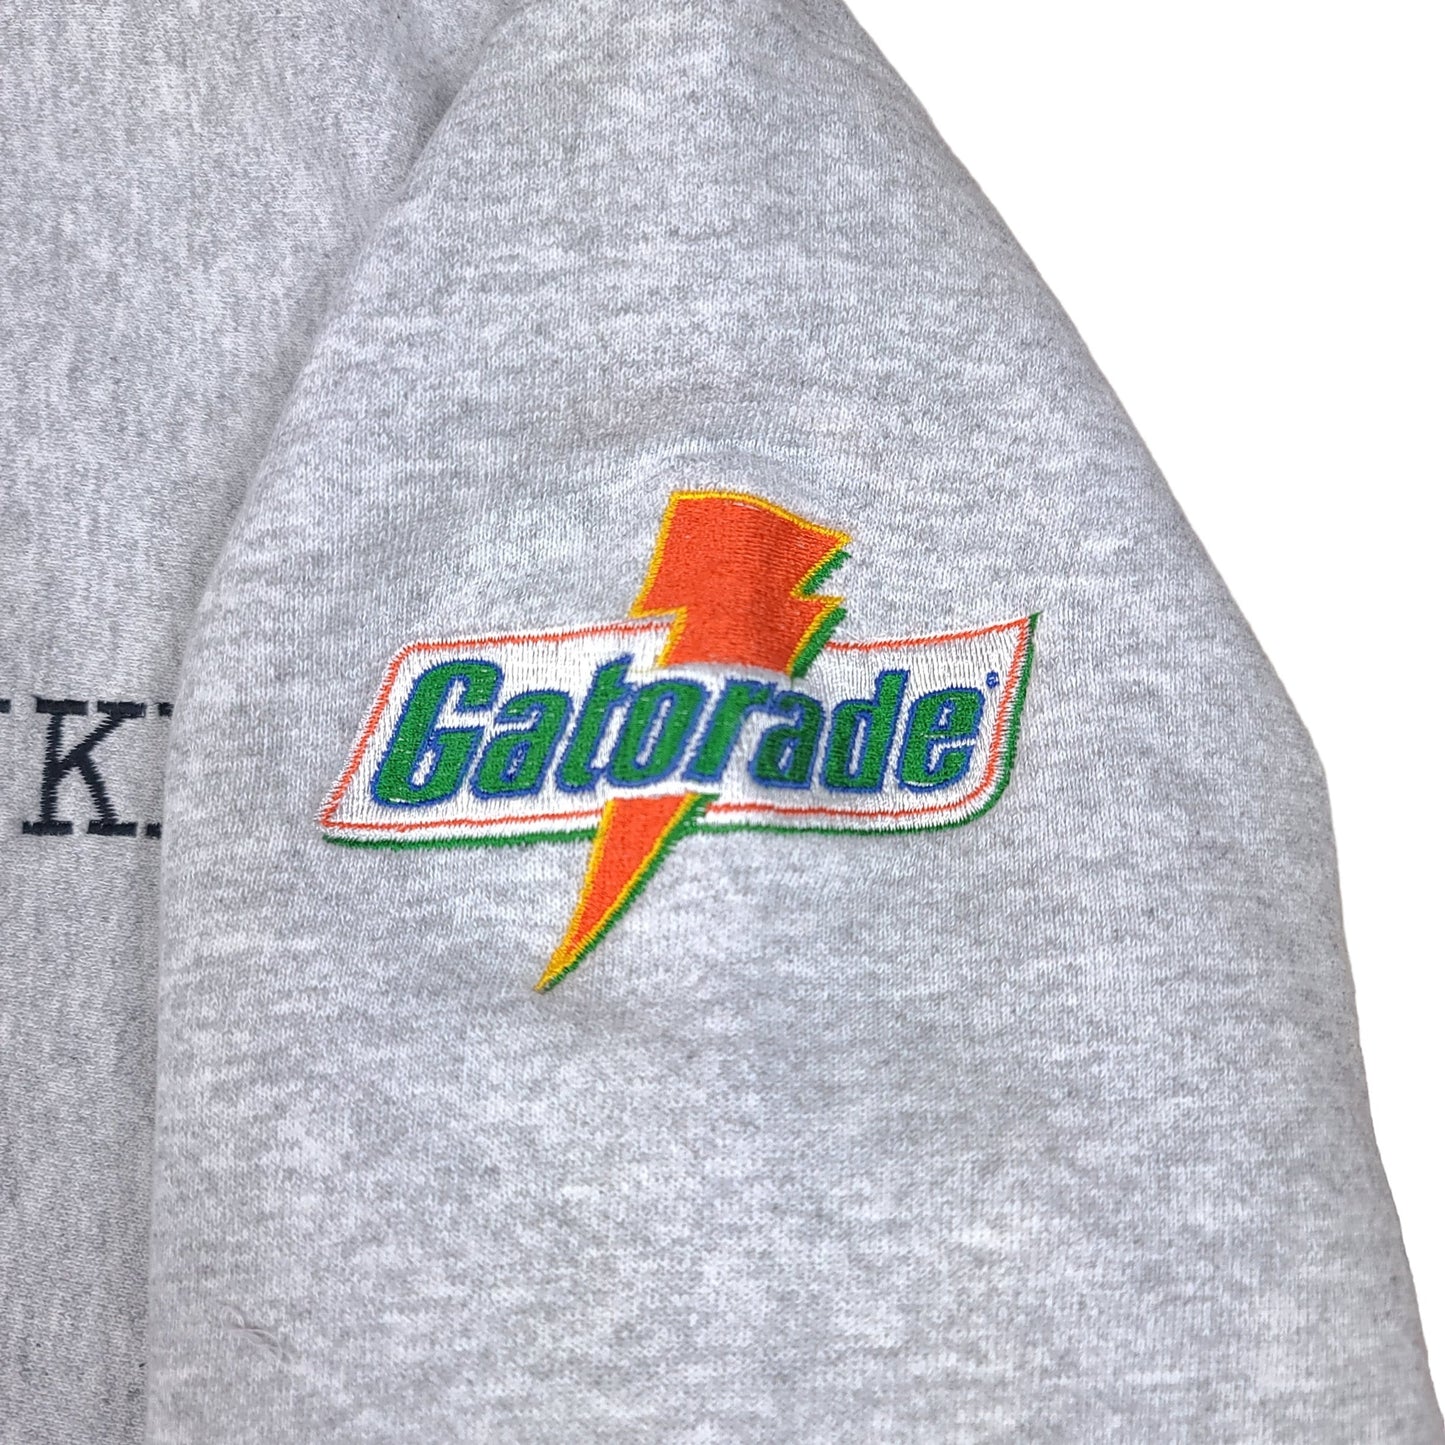 Vintage Be Like Mike Drink Gatorade Gray Lee Sweatshirt